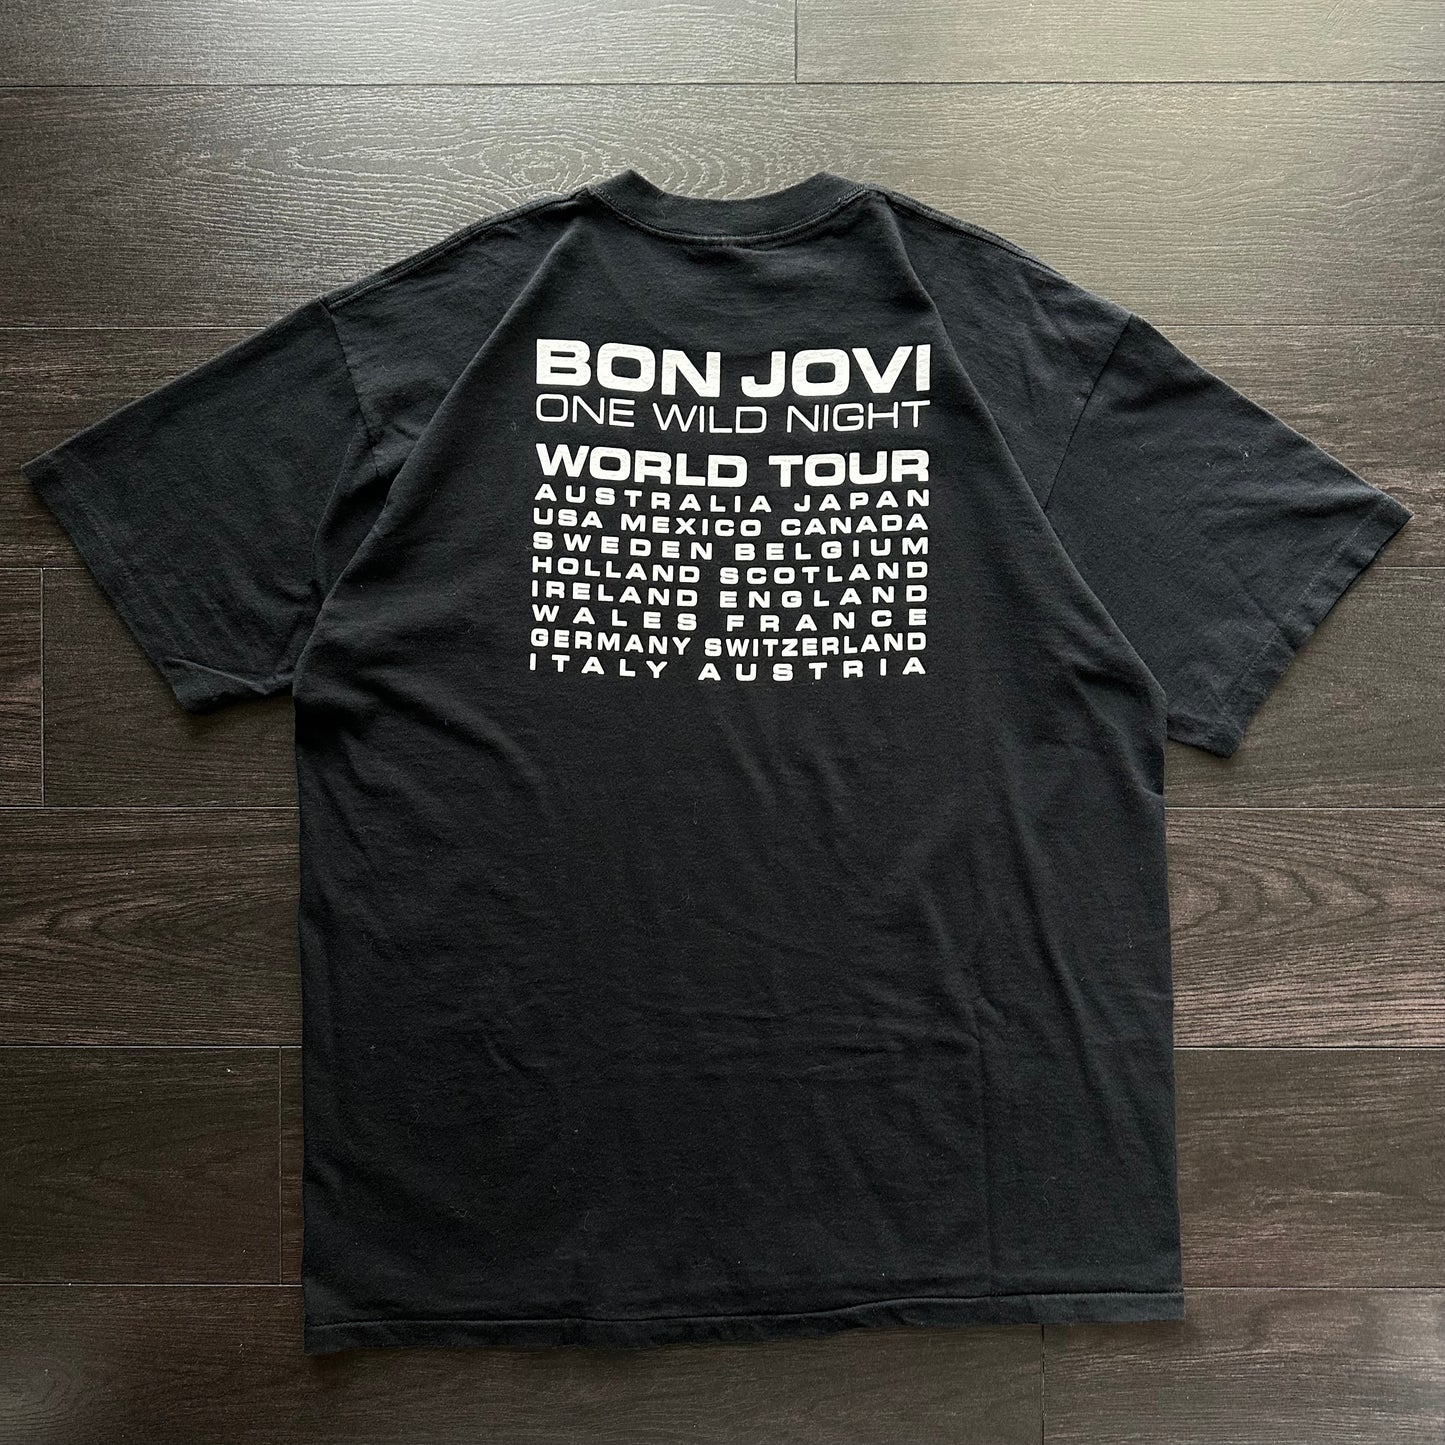 Vintage Bon Jovi "One Wild Night Tour" Tee